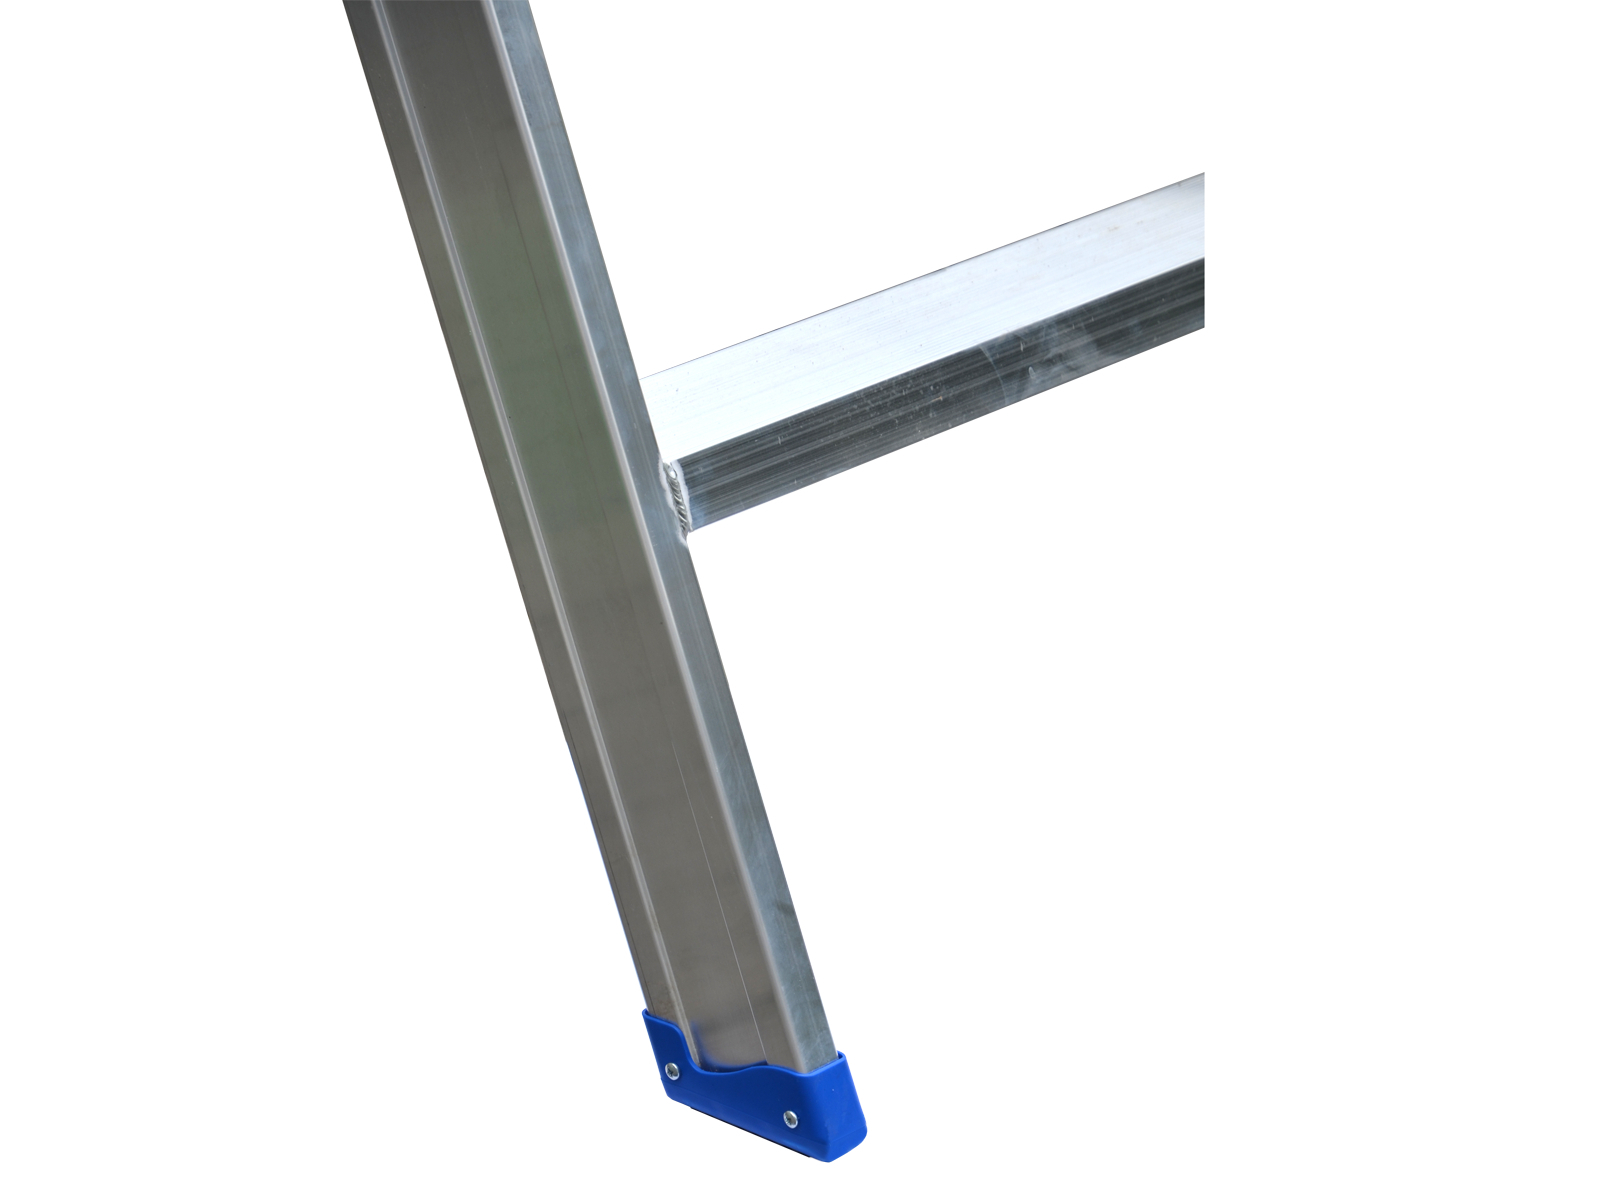 Leiterntritt 420 mm breit mit Antirutschbelag und Stahlgelenken, 2x2 Stufen